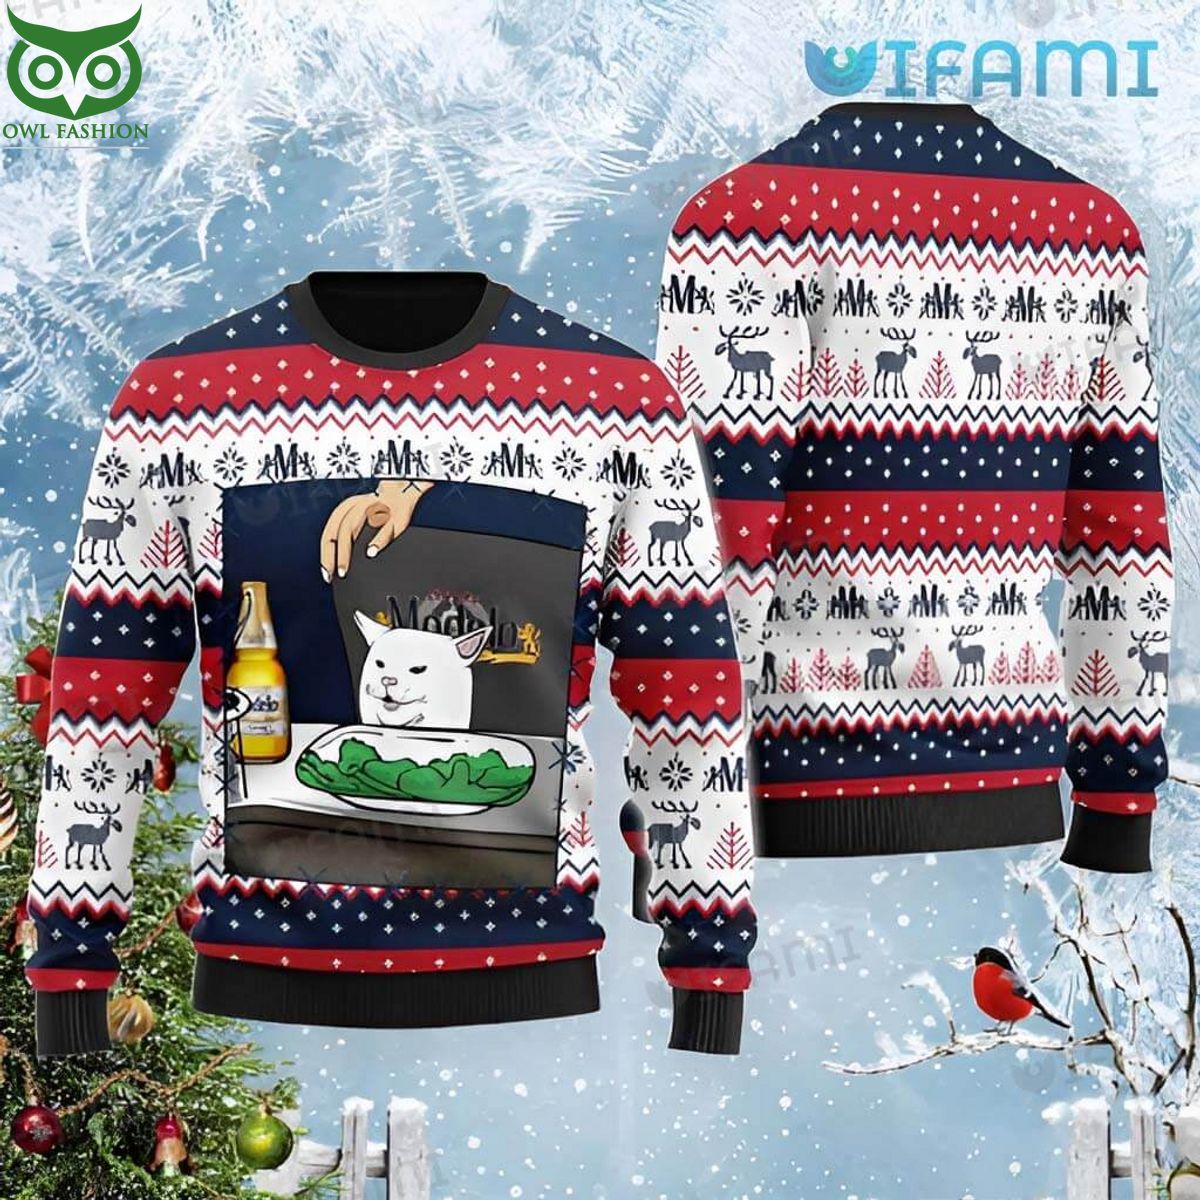 modelo ugly christmas sweater cat meme beer lovers gift 1 1RlGw.jpg